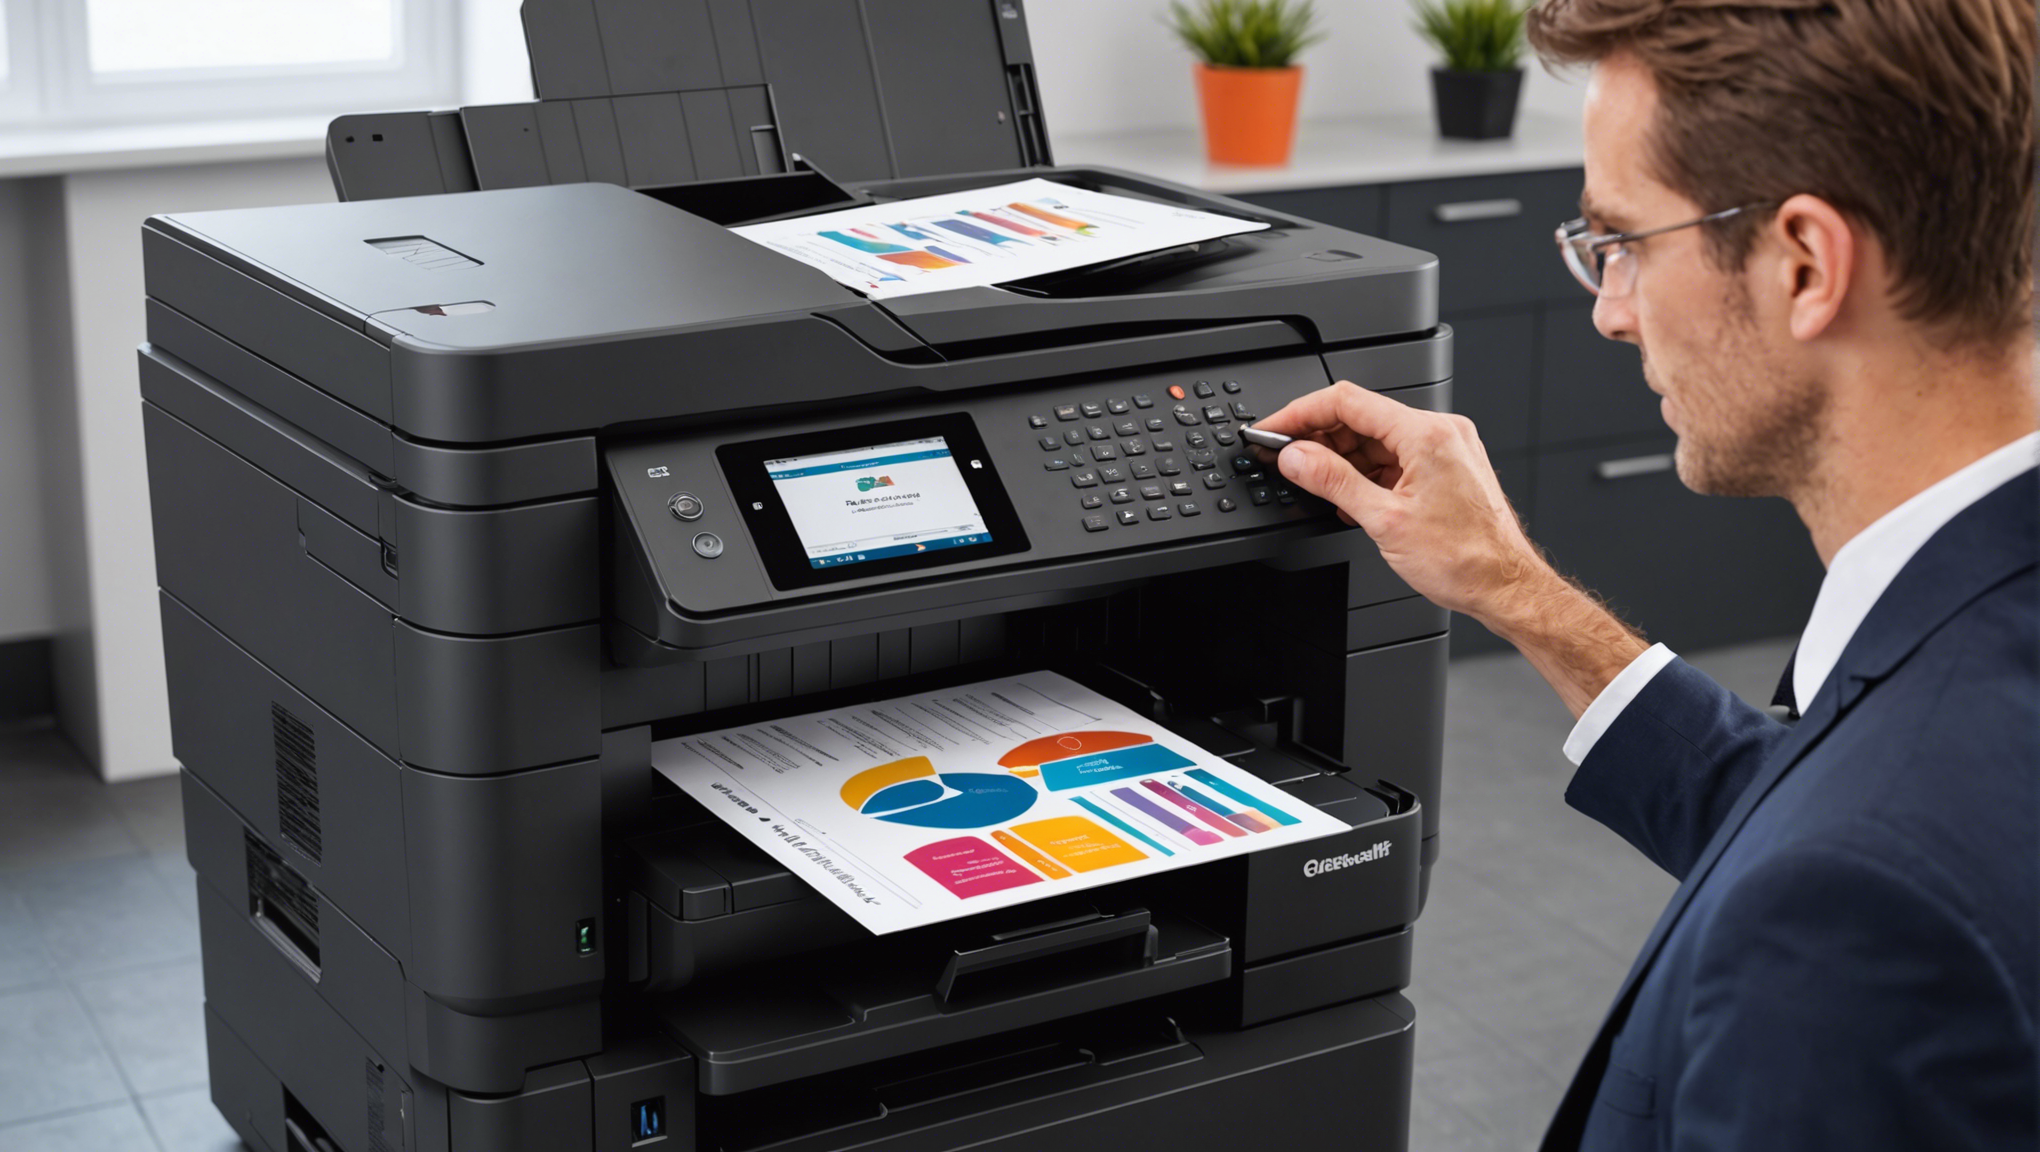 découvrez les imprimantes professionnelles à prix abordables et comprenez ce qui définit une imprimante professionnelle abordable.